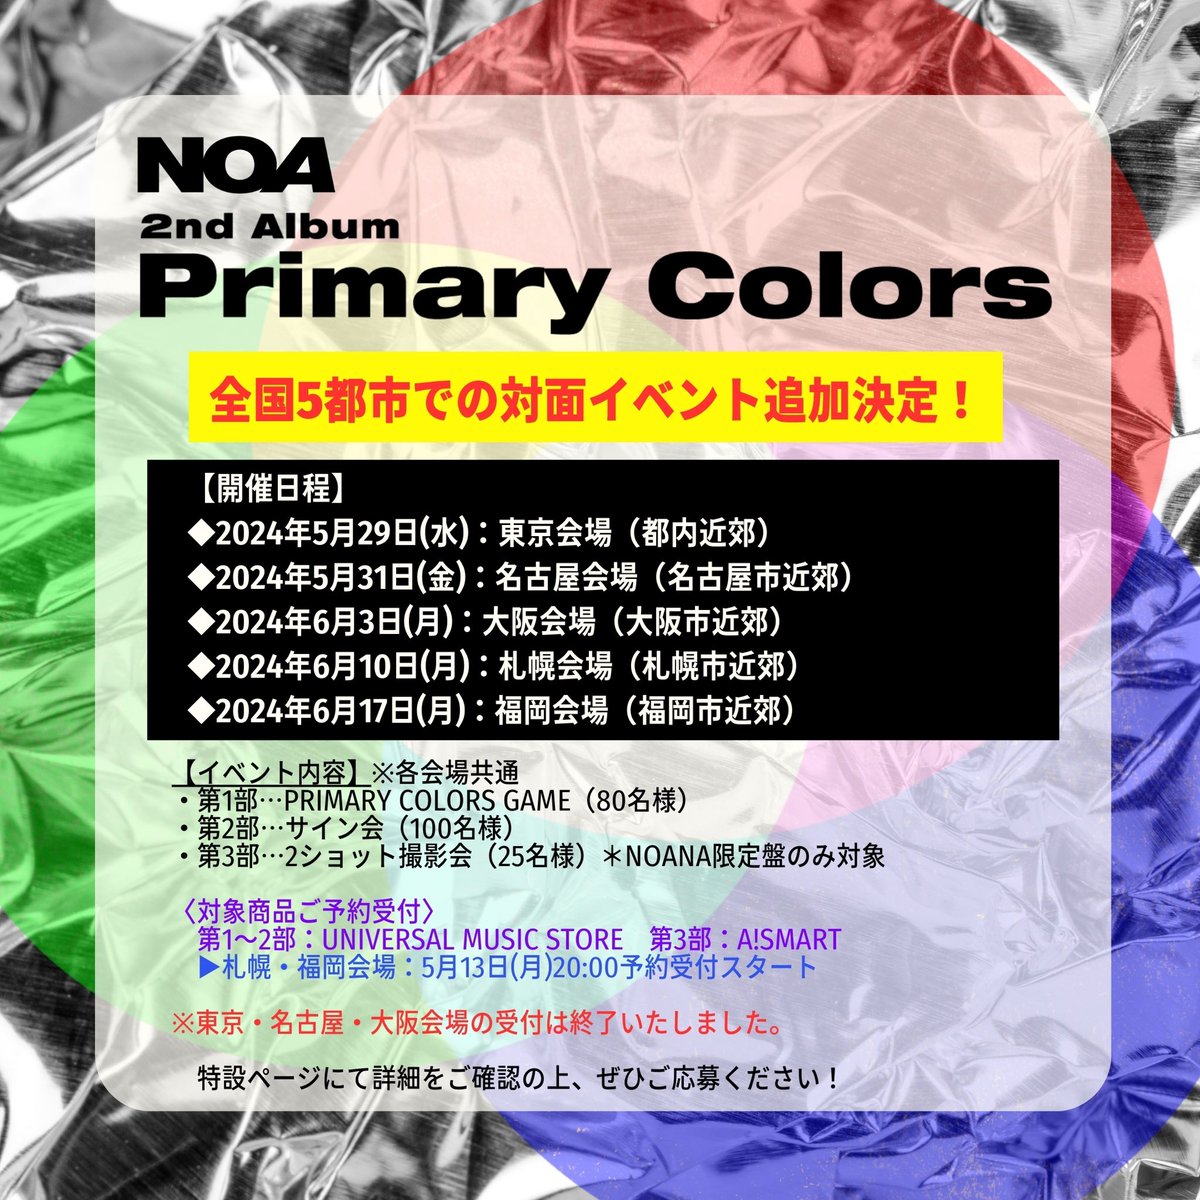 NOA 2nd ALBUM
『Primary Colors』
追加対面イベント 札幌・福岡会場の受付が開始いたしました🙌

福岡は『Primary Colors』では初、
札幌はイベント自体が初となります🌟

ポップアップカフェと一緒にぜひお楽しみください☕️

🔽対象購入期間
2024年5月13日(月)20:00～5月19日(日)23:59

BY NOA STAFF…